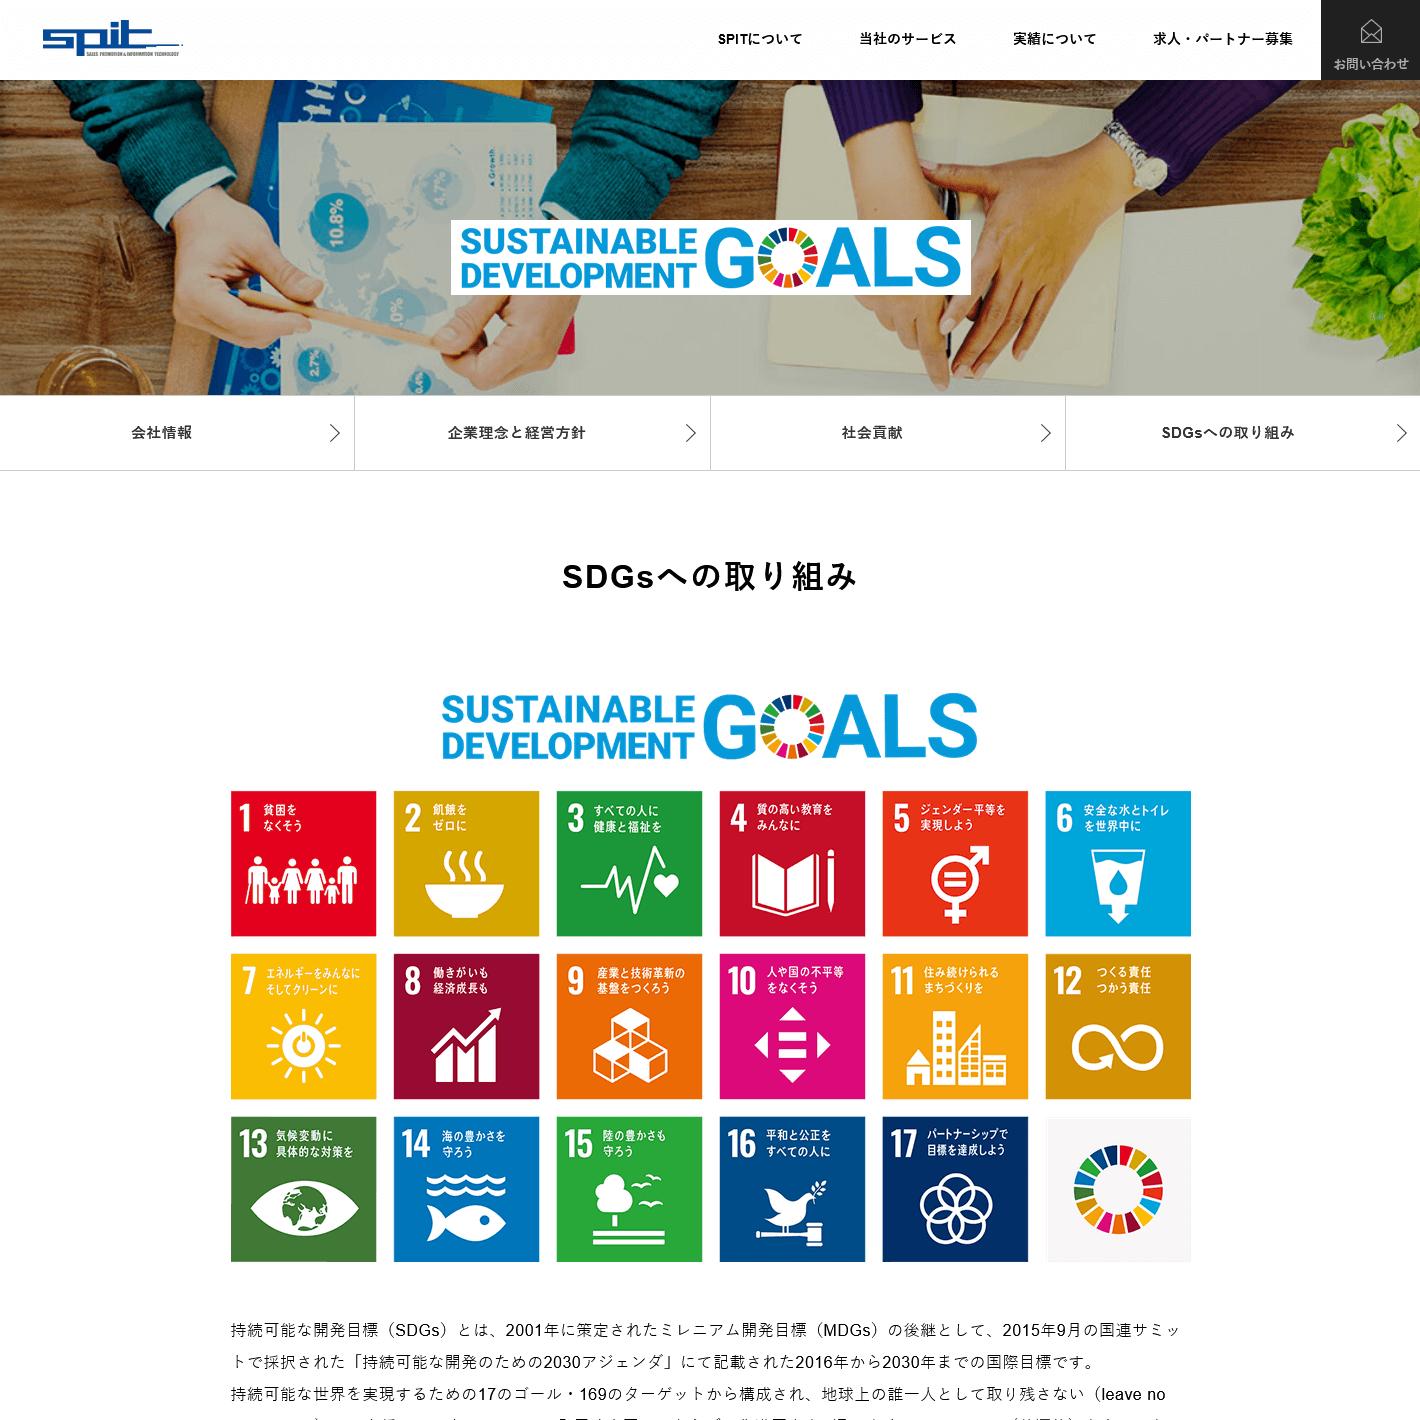 自社サイト SDGsページ